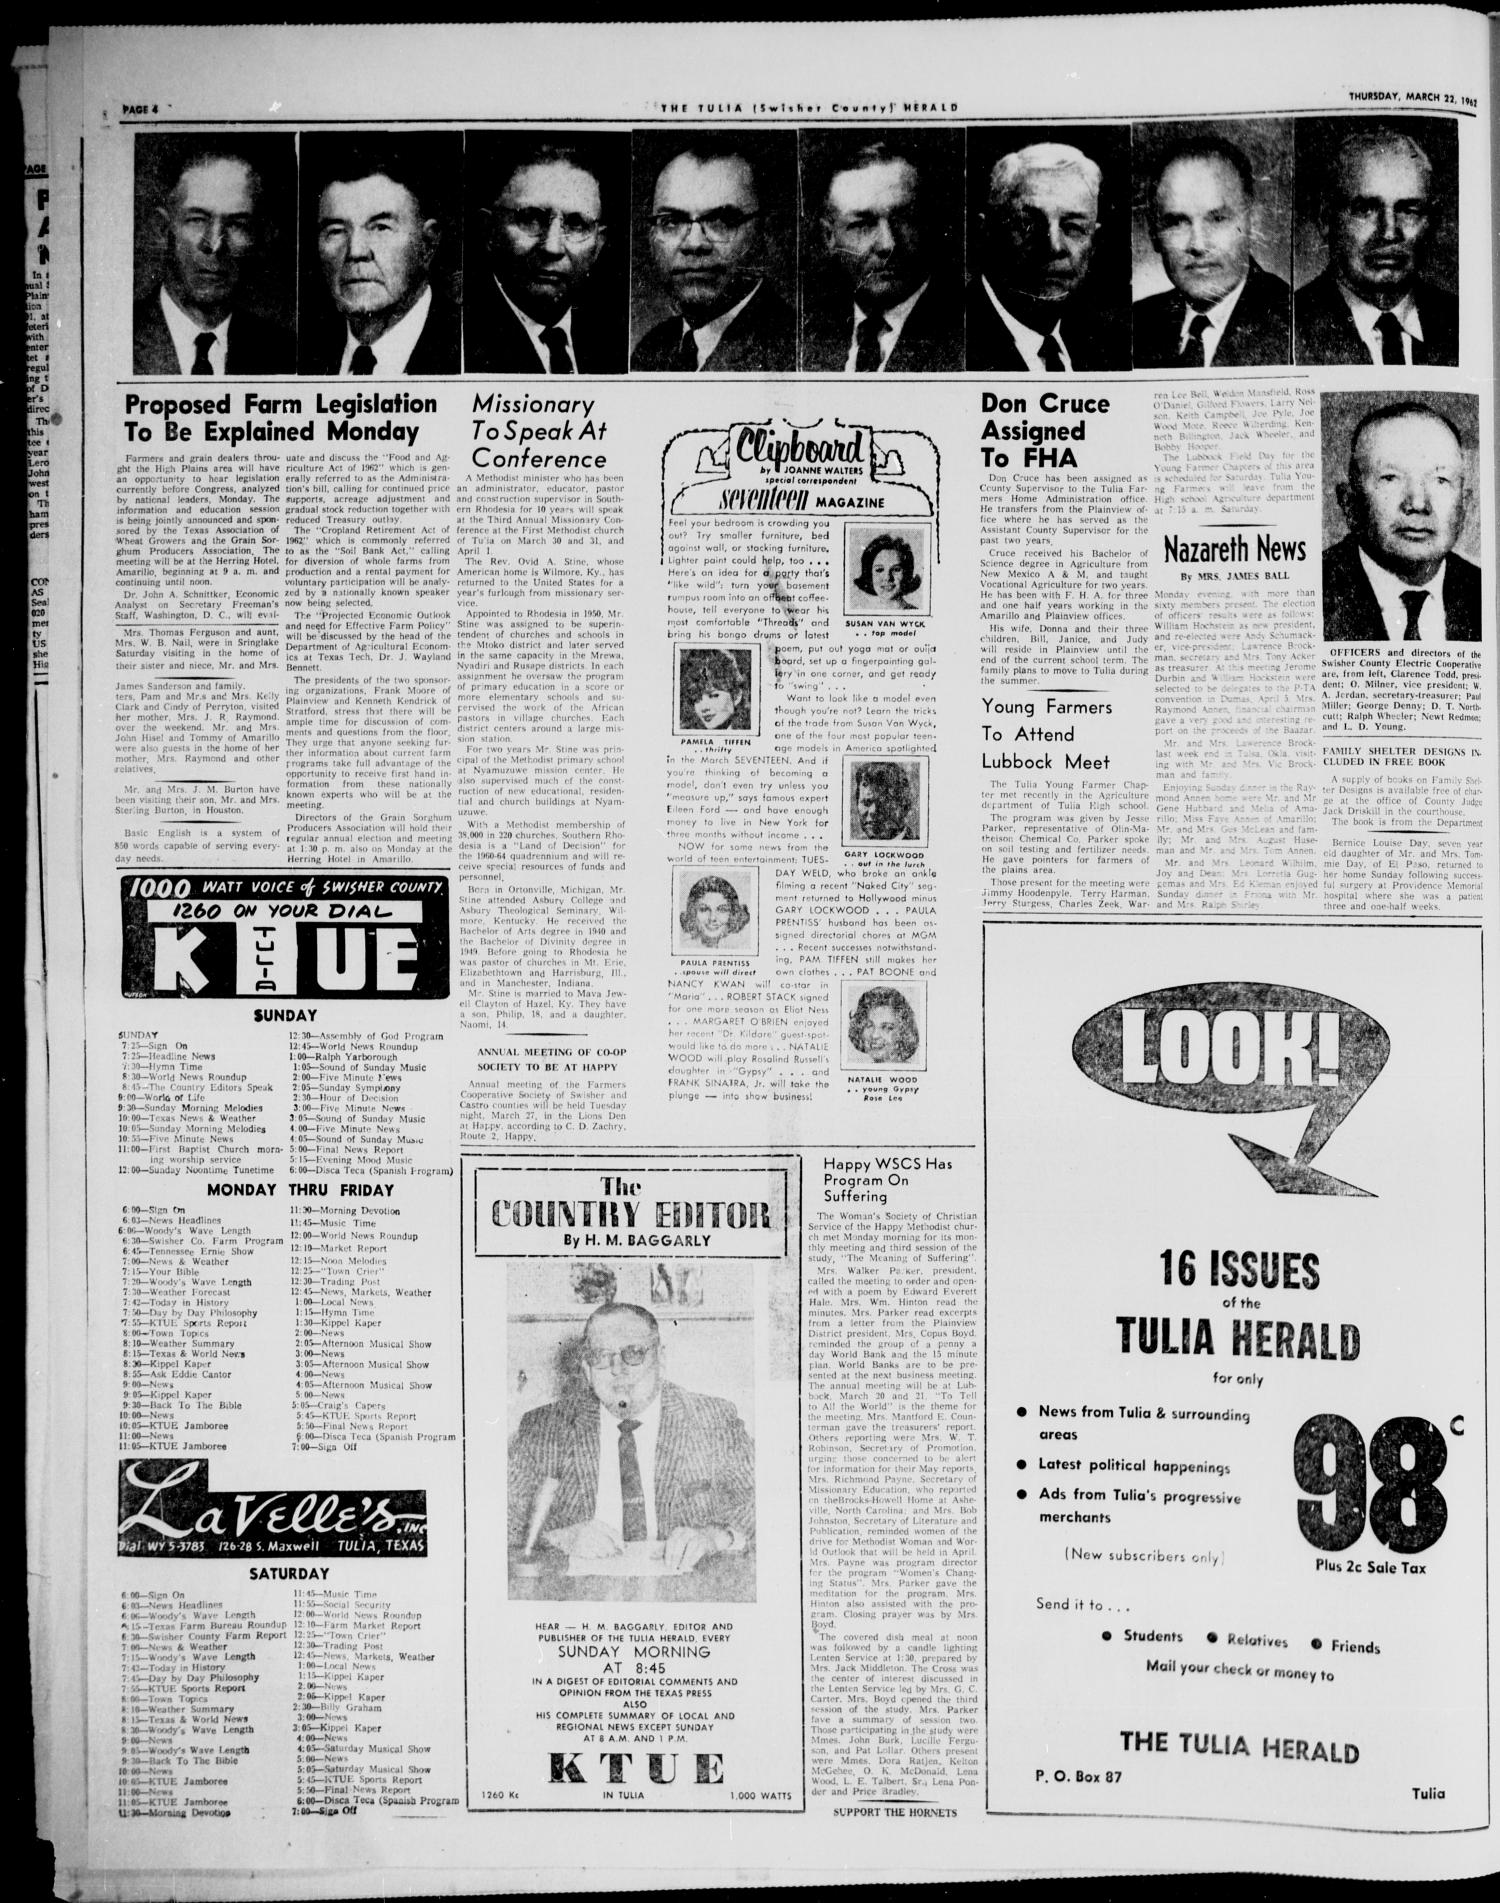 The Tulia Herald (Tulia, Tex), Vol. 54, No. 12, Ed. 1, Thursday, March 22, 1962
                                                
                                                    4
                                                